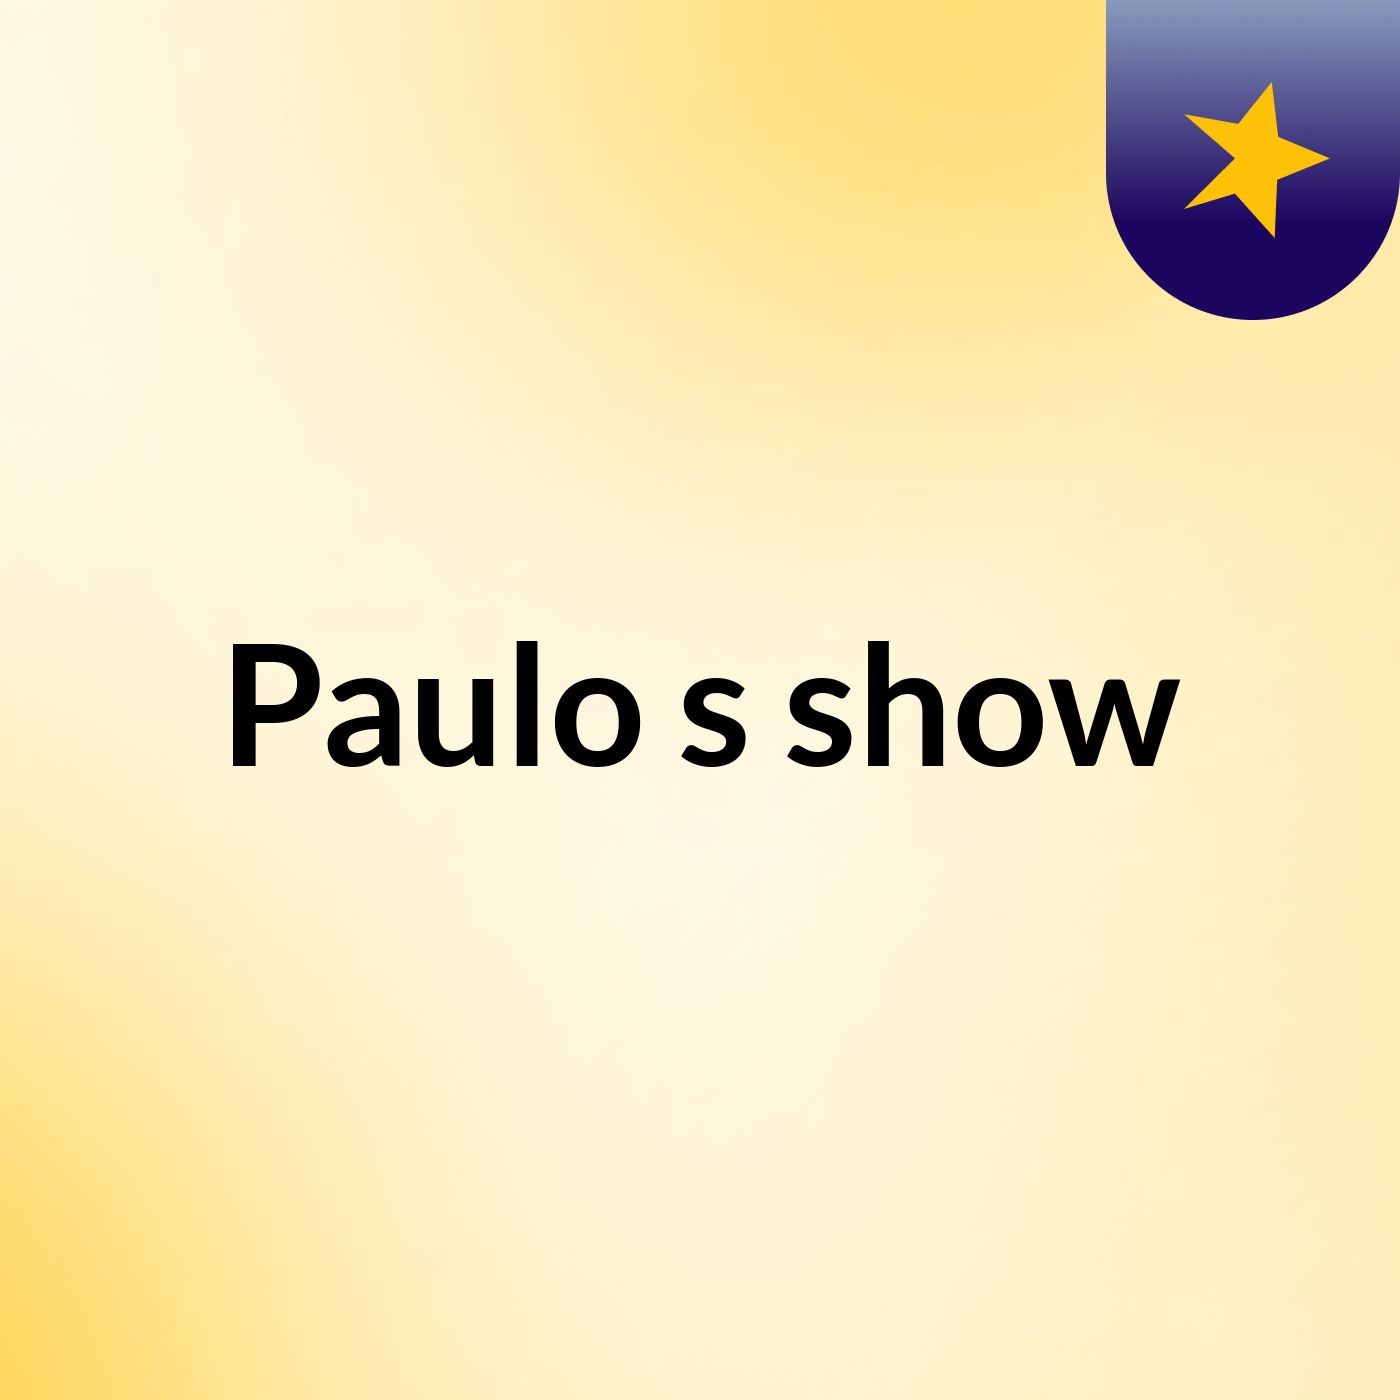 Paulo's show